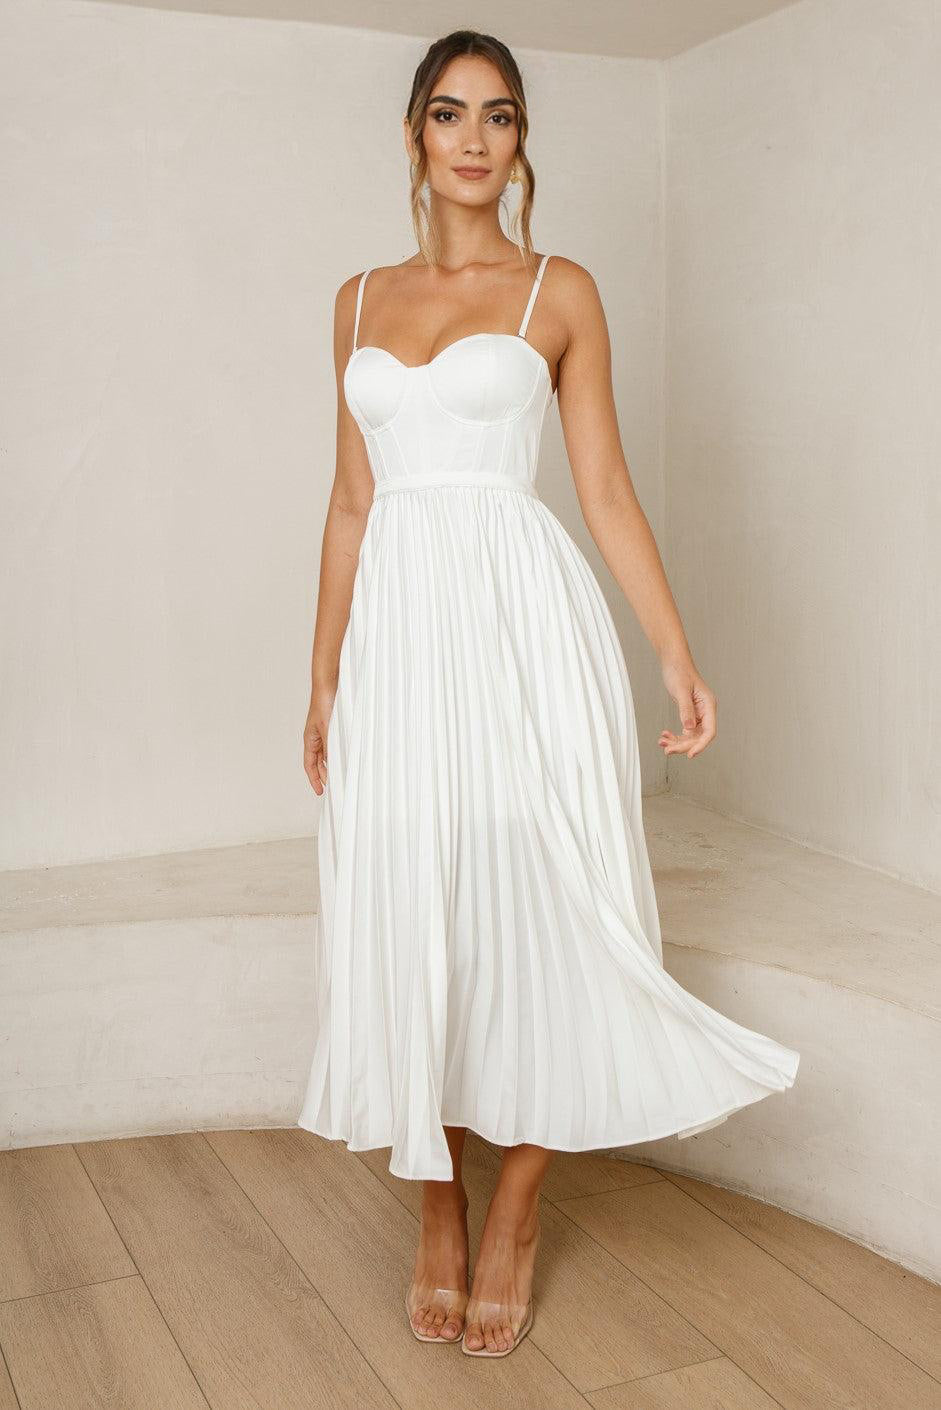 Milan Dress - White - SHOPJAUS - JAUS